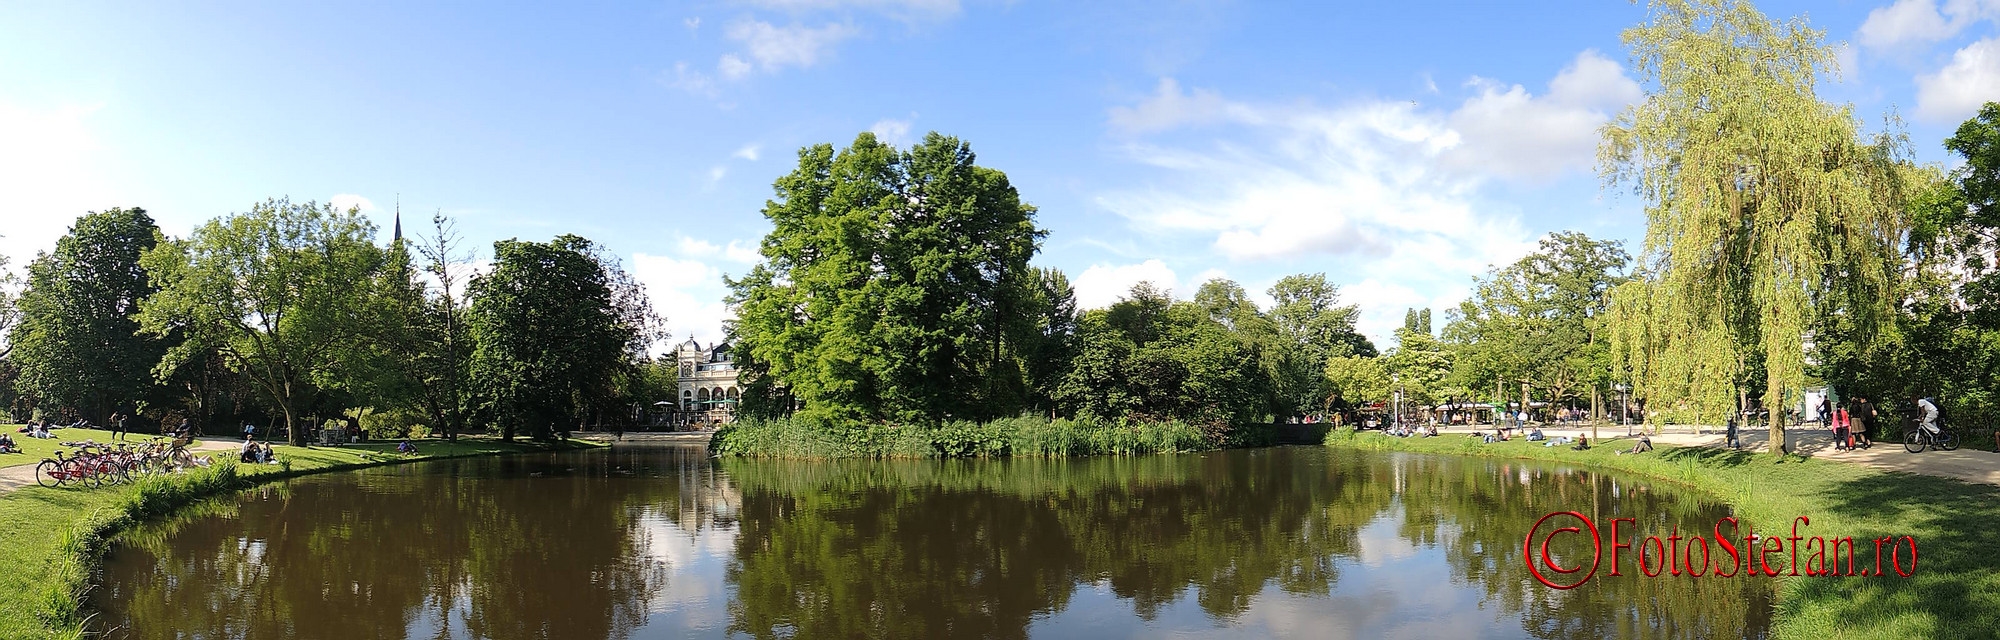 poza panoramica parcul Vondel amsterdam